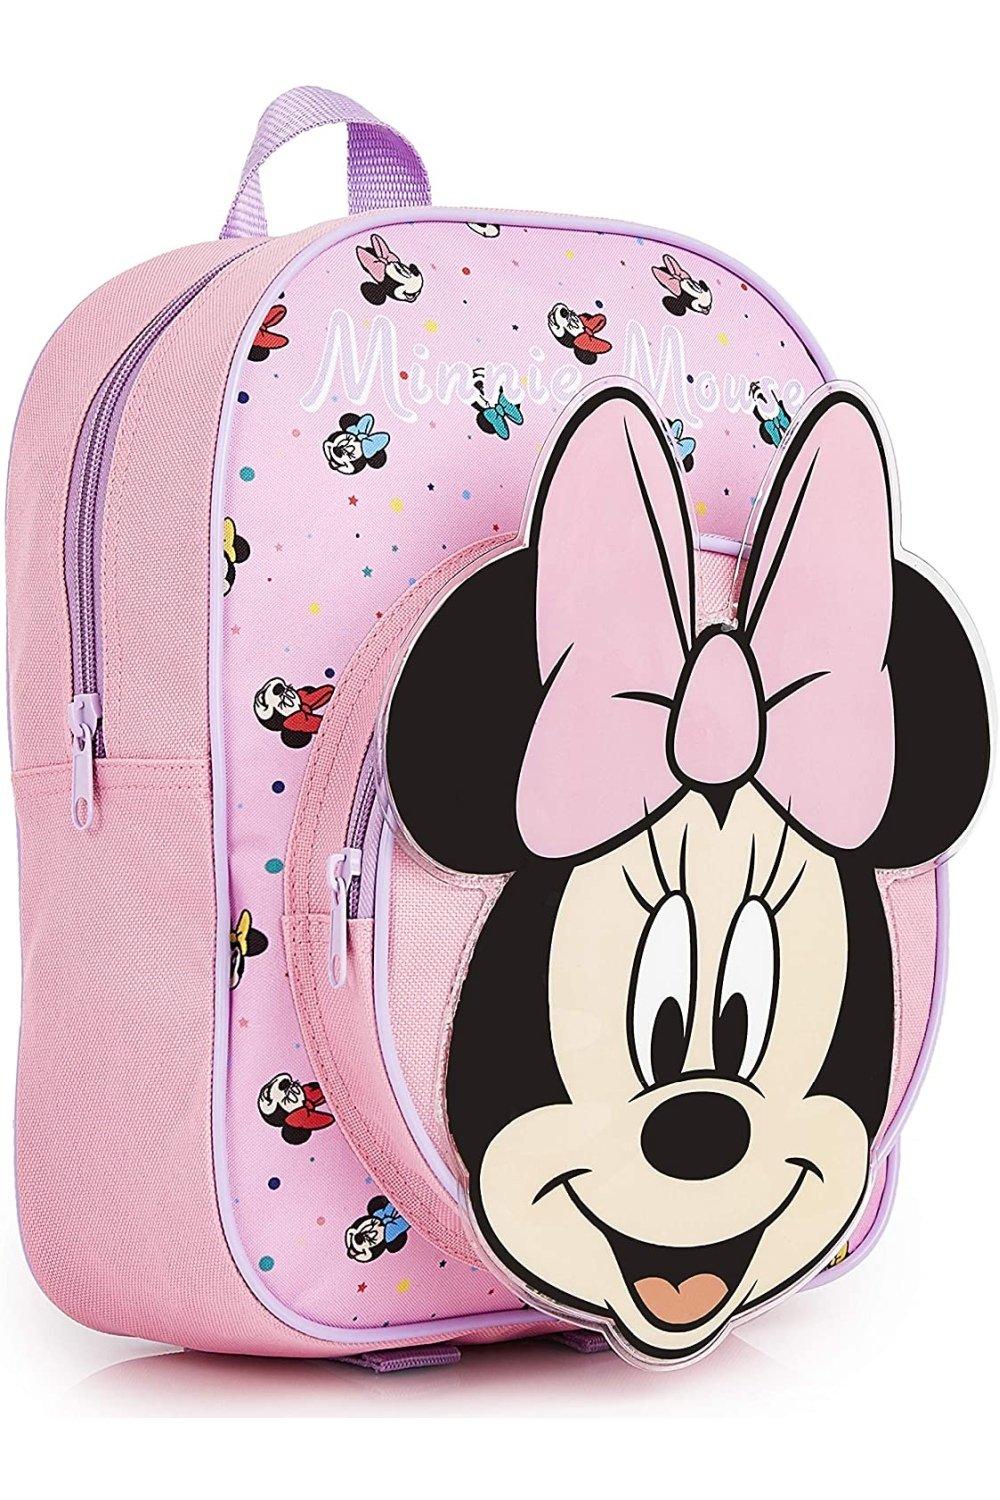 Школьная сумка Минни Маус Disney, розовый рюкзак с мультипликационным изображением диснея плюшевая школьная сумка с микки маусом минни винни пухом для детского сада детские школ